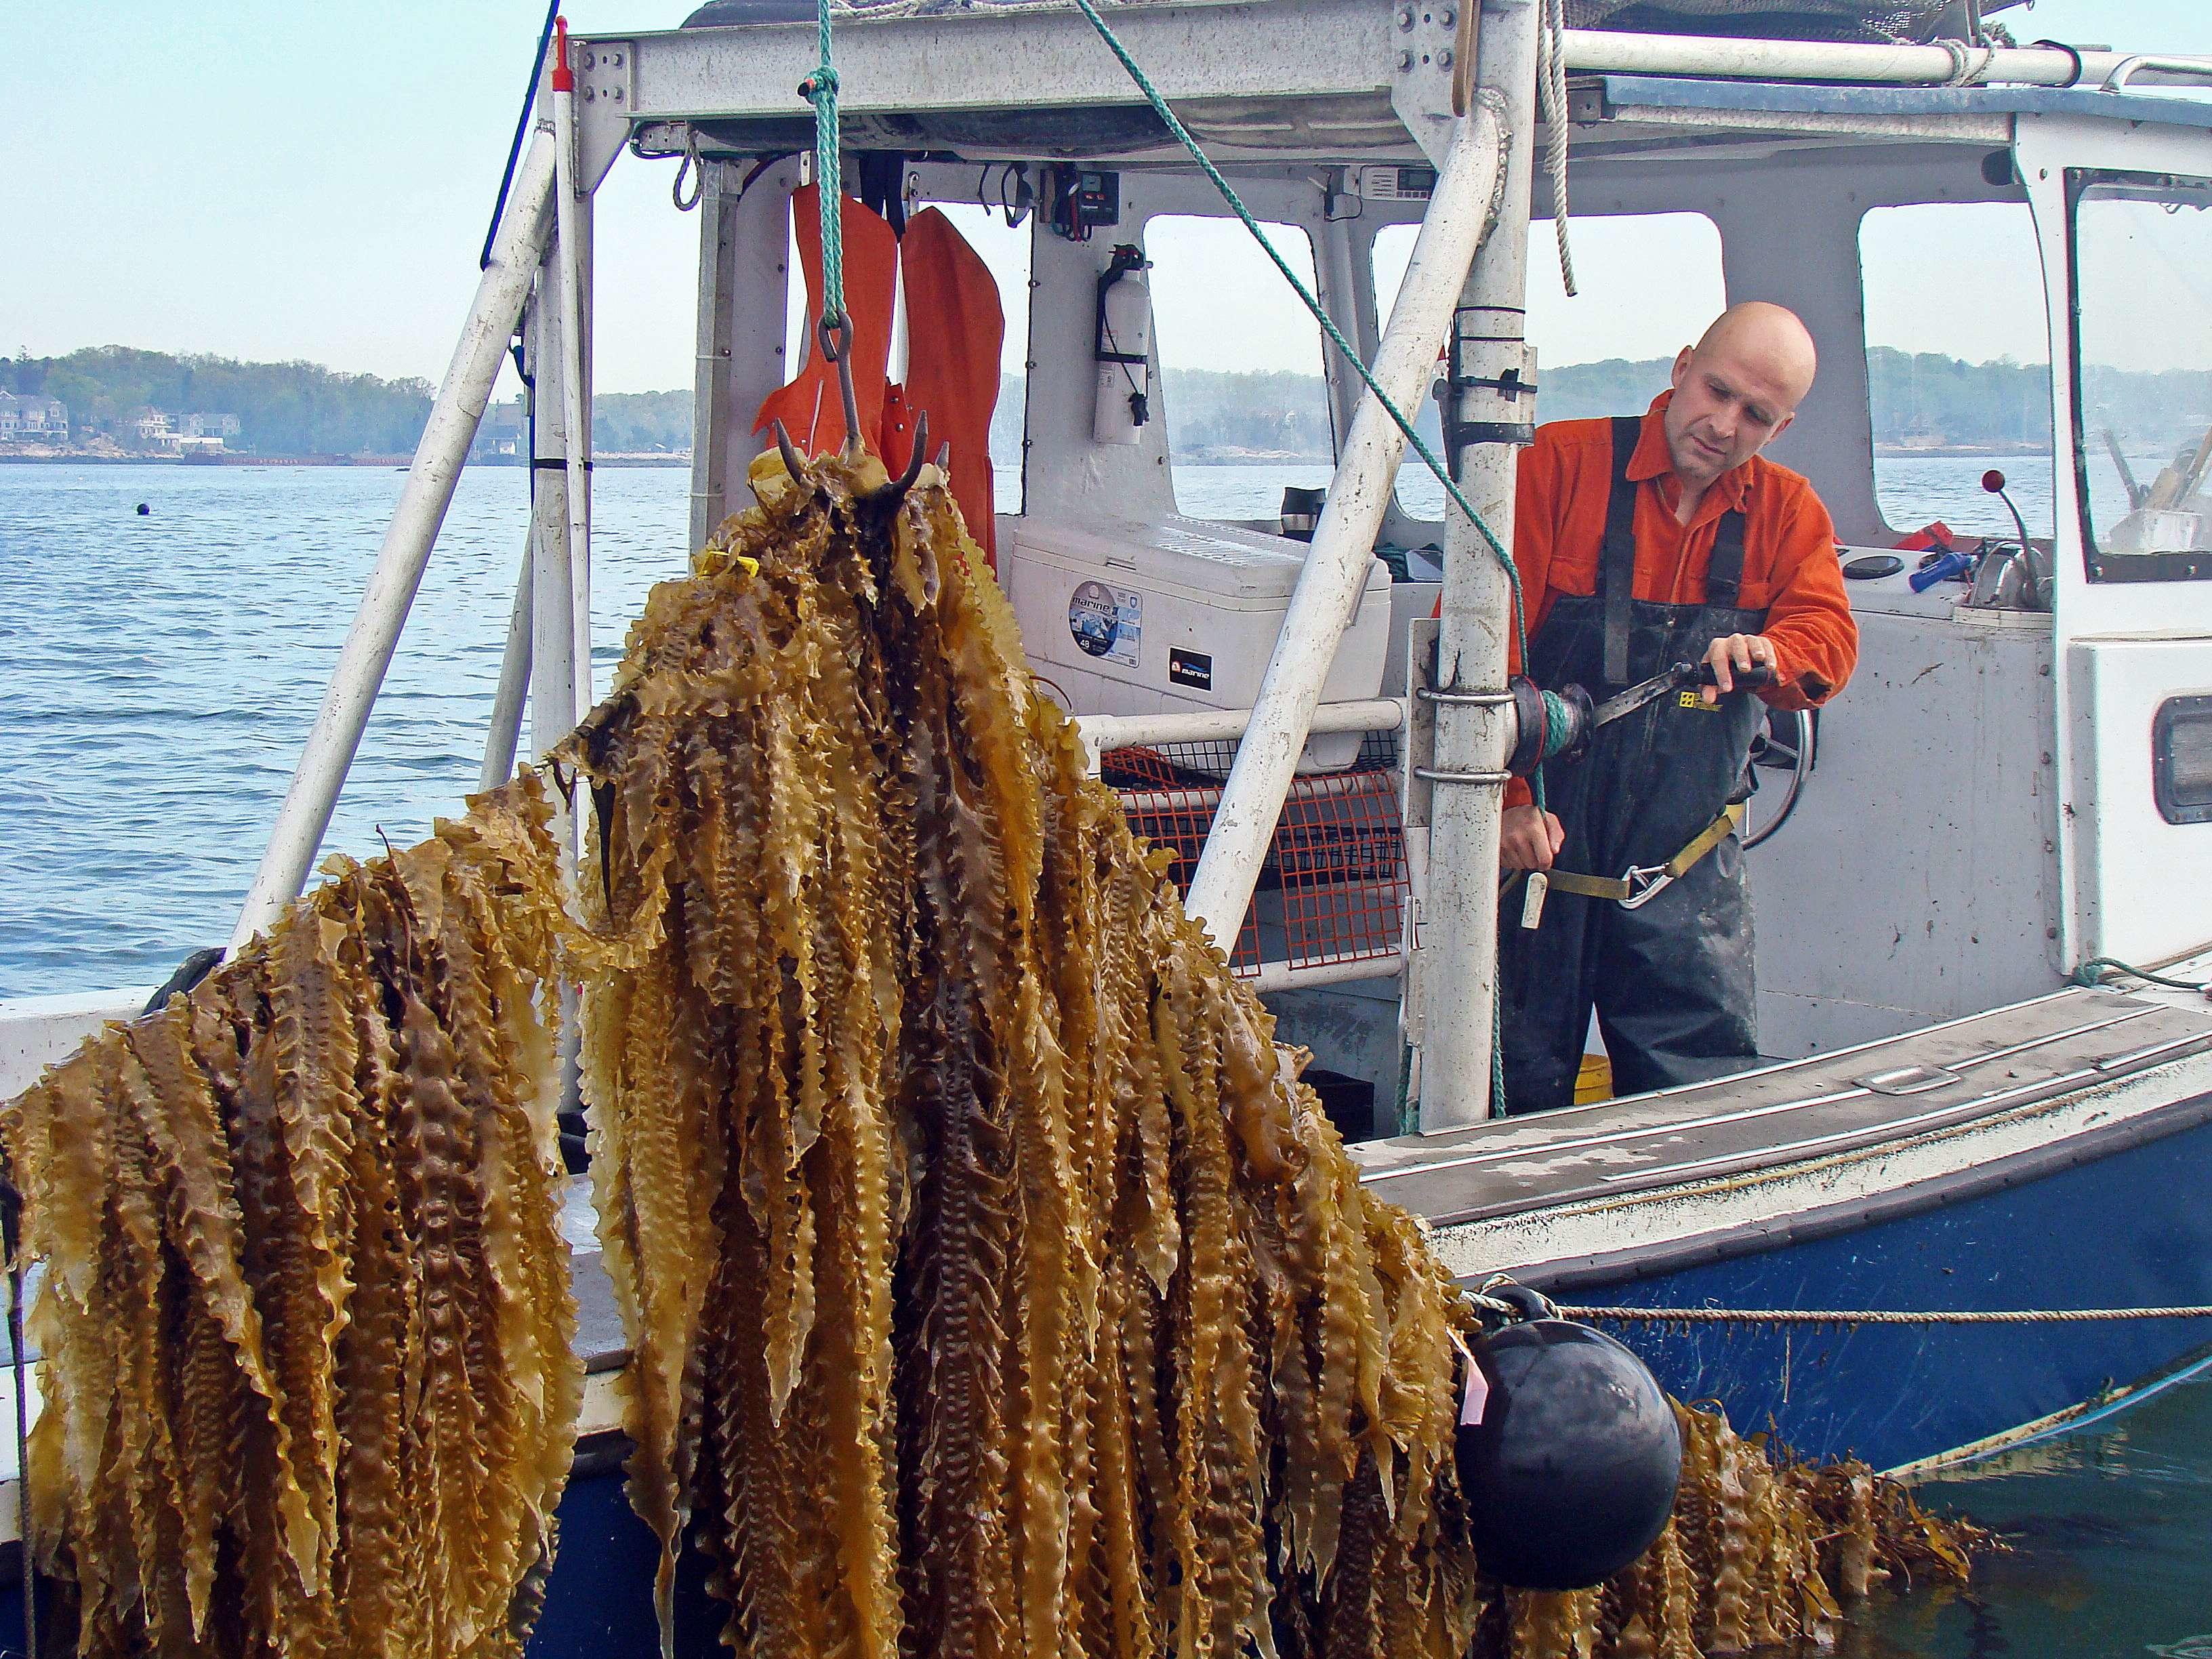 Le varech, algue utilisée par Bren Smith, absorbe jusqu’à cinq fois plus de carbone que les plantes terrestres. Un bon moyen pour nettoyer les océans tout en produisant de la nourriture. GreenWave/Cover Images/Sipa